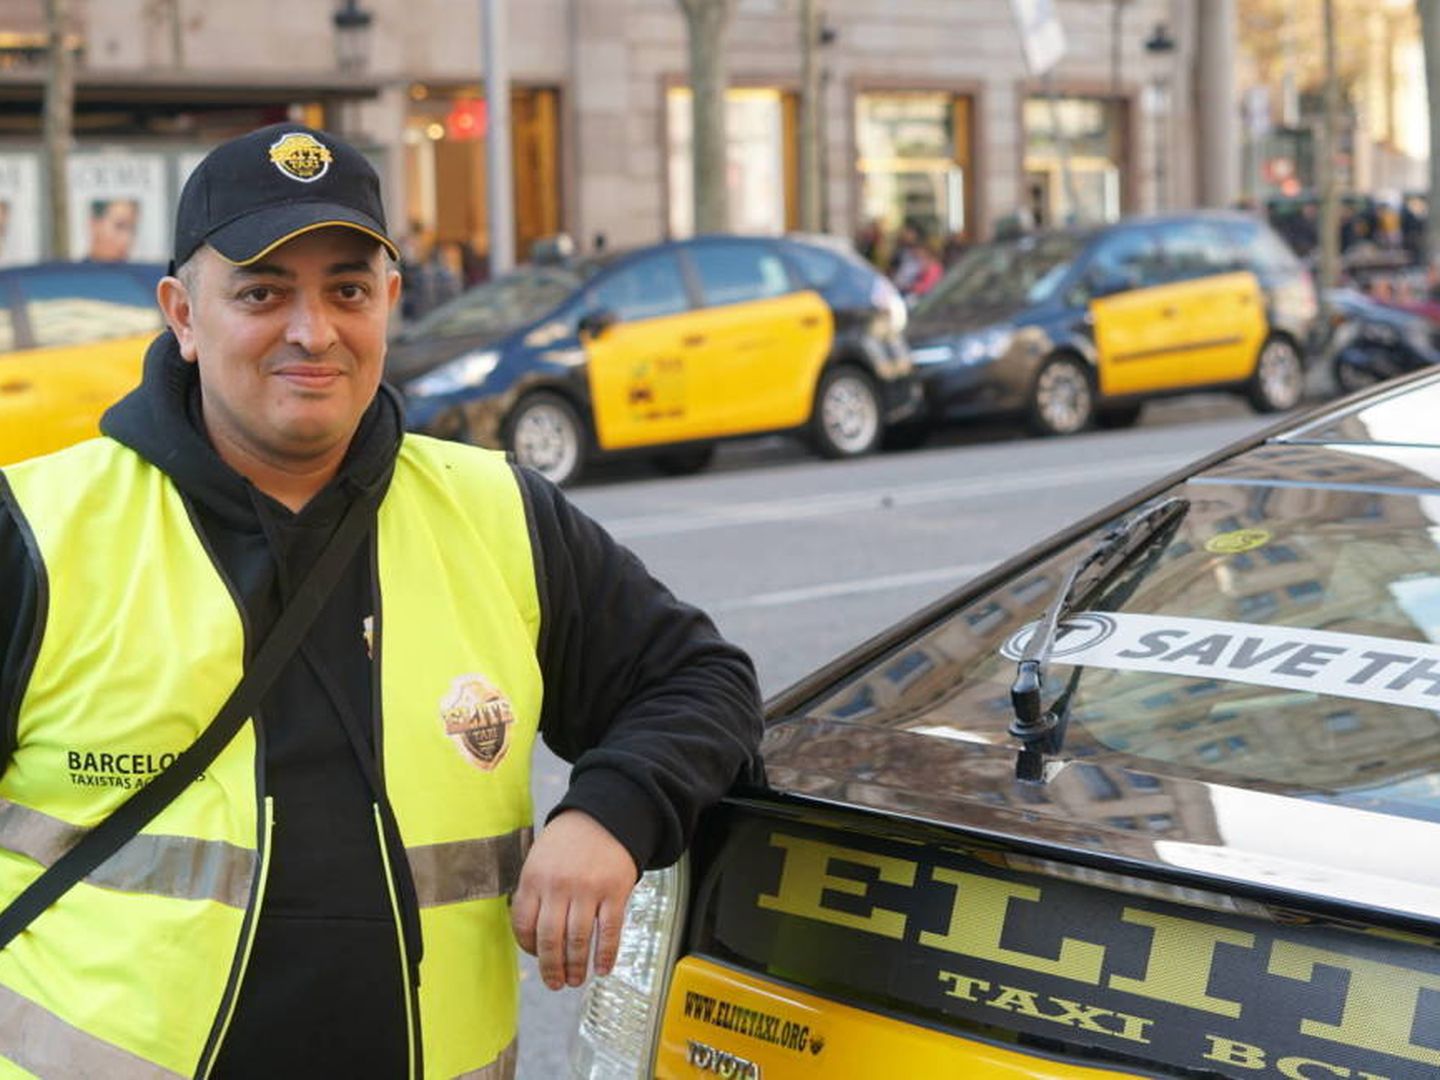 Tito posa junto a un taxi de la asociación Élite. (M. Mcloughlin)